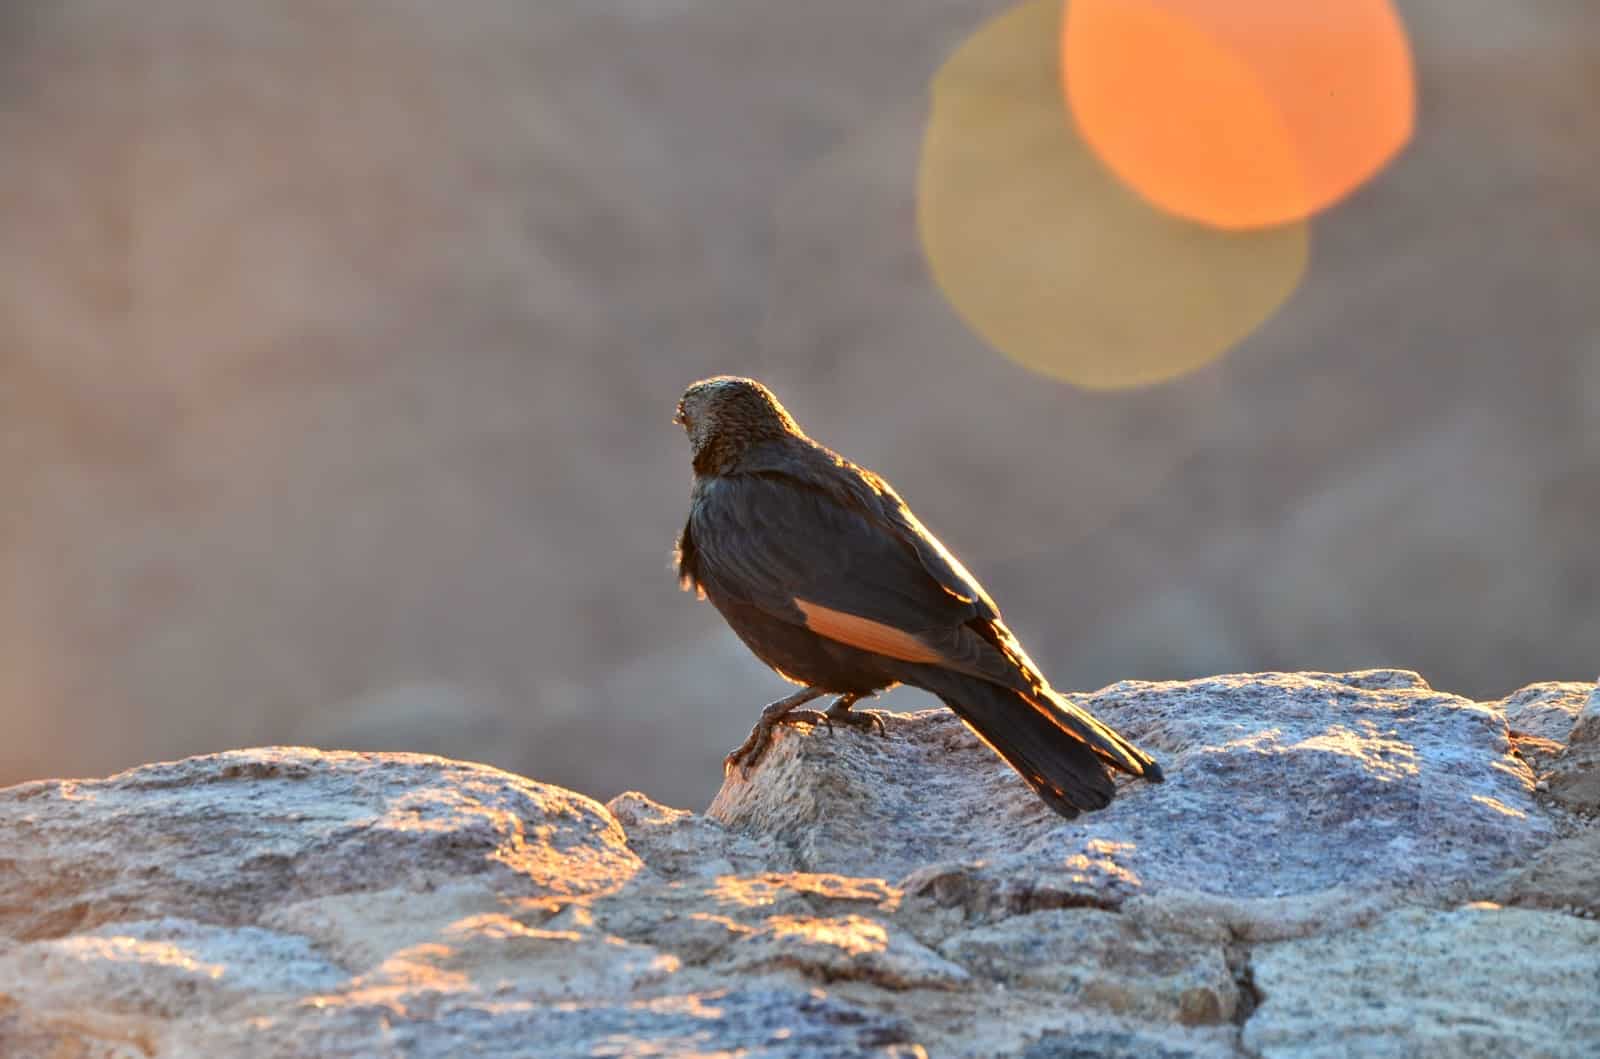 A bird on Mount Sinai, Egypt